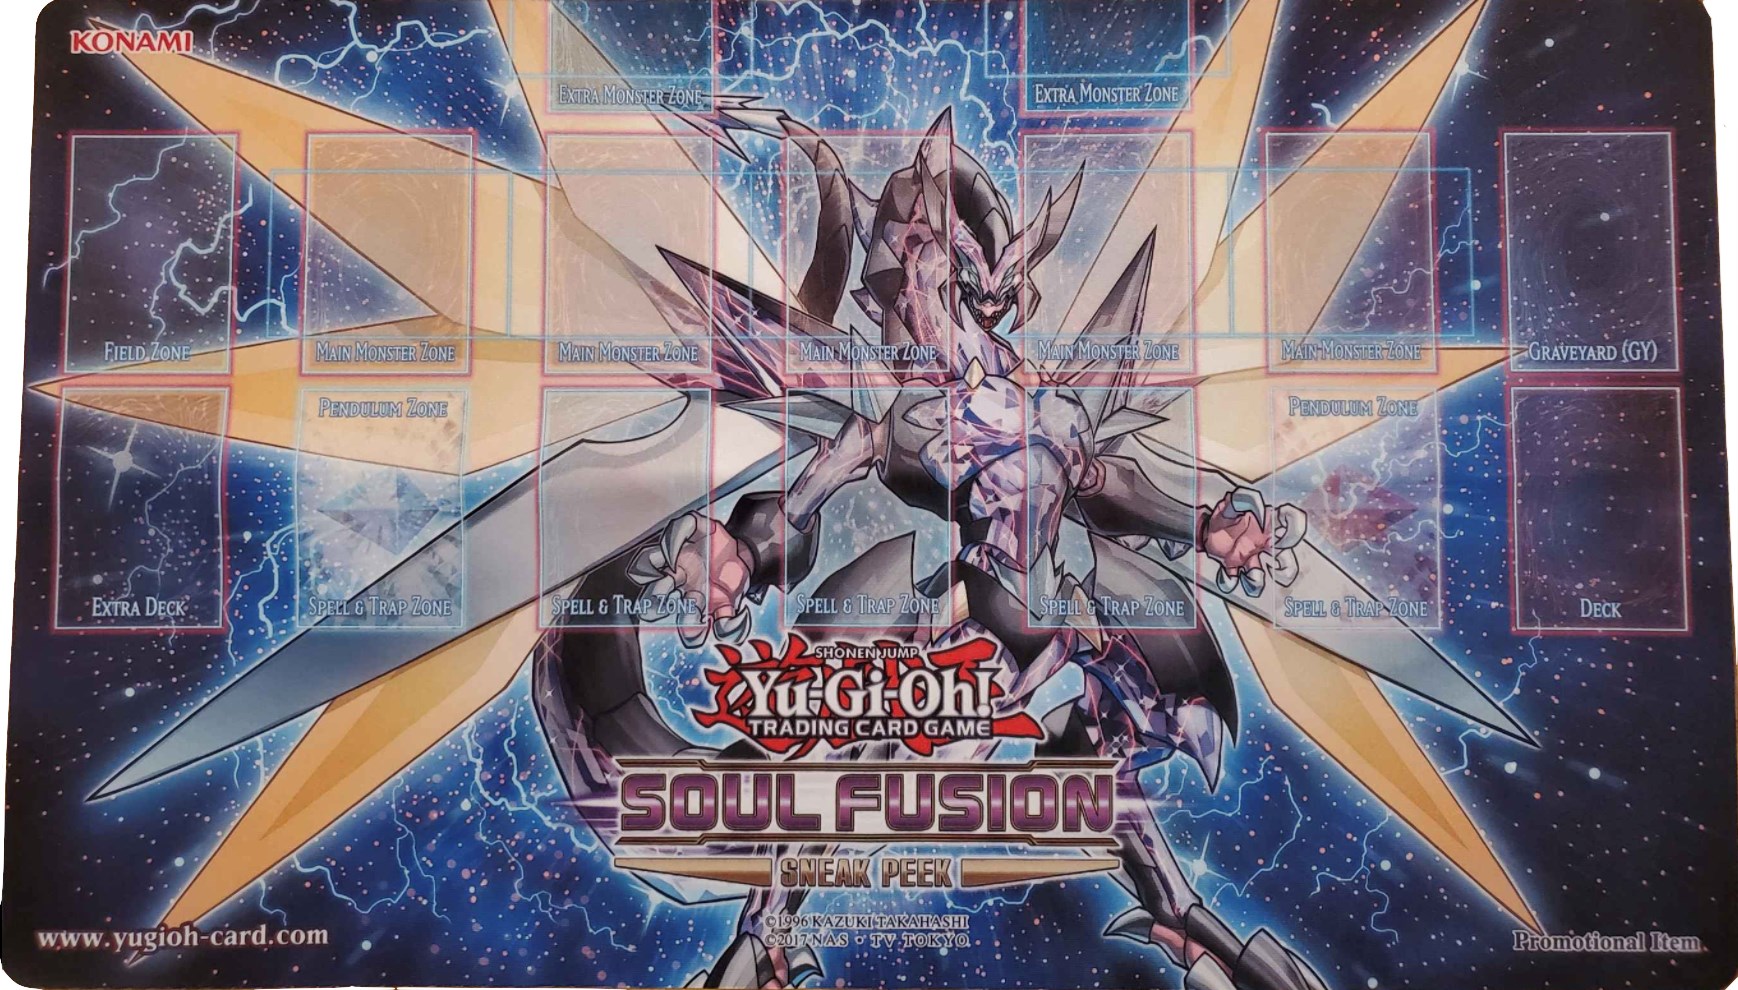 Yu-Gi-Oh! Soul Fusion Sneak Peek Promo Game Mat - Cyberse Clock Dragon -  Konami Playmats - Playmats